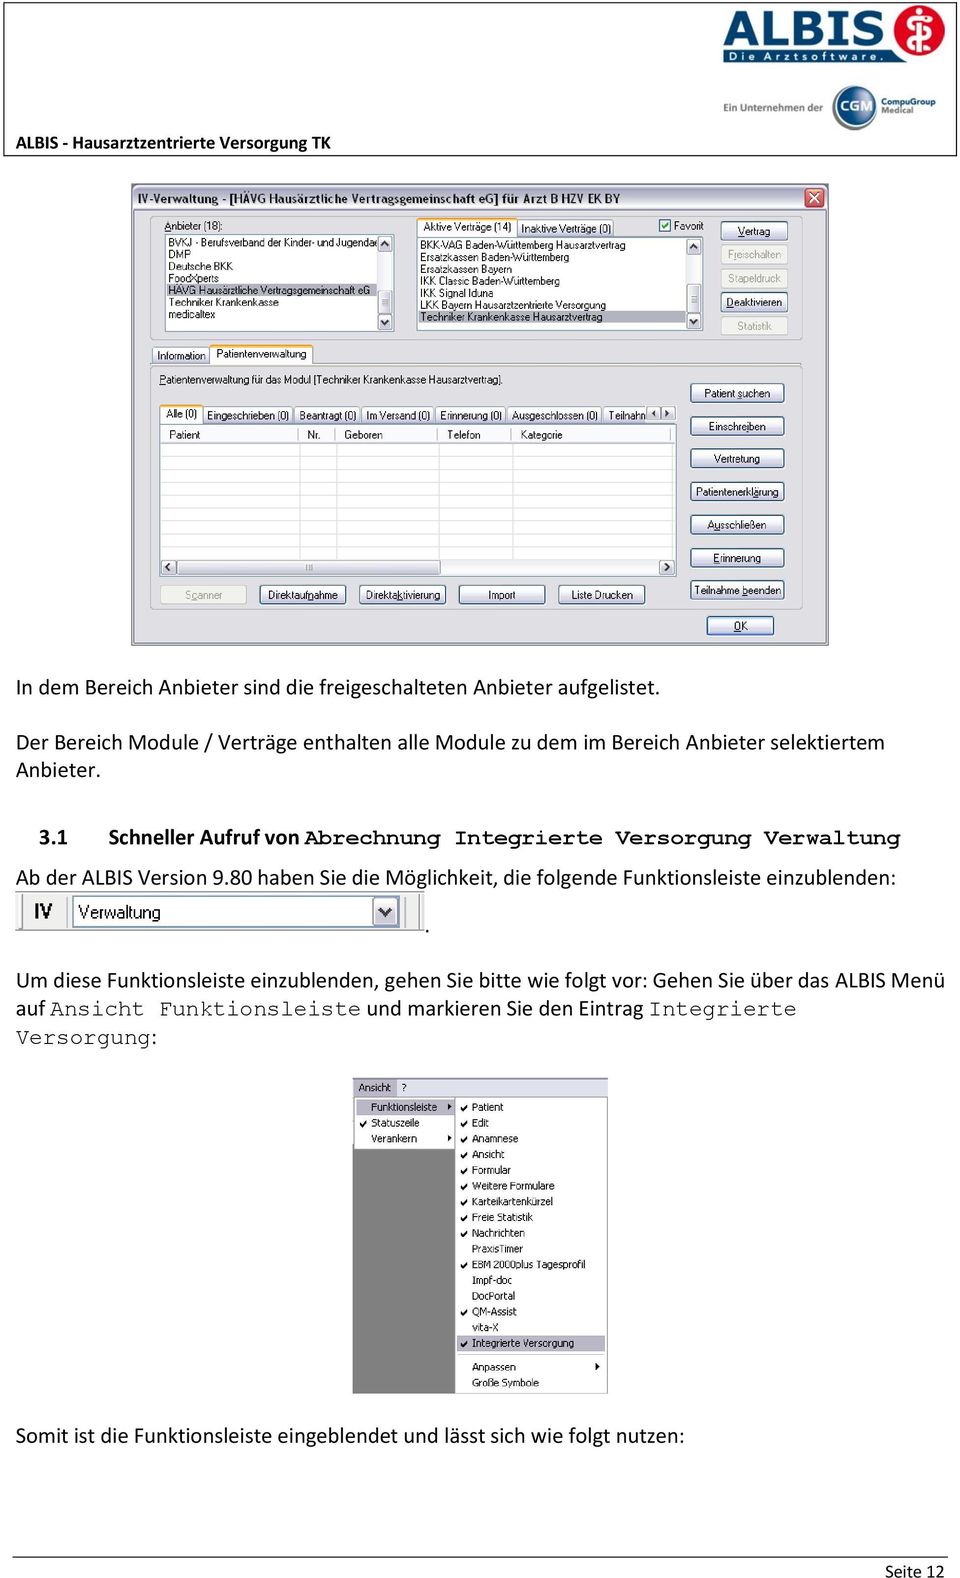 1 Schneller Aufruf von Abrechnung Integrierte Versorgung Verwaltung Ab der ALBIS Version 9.